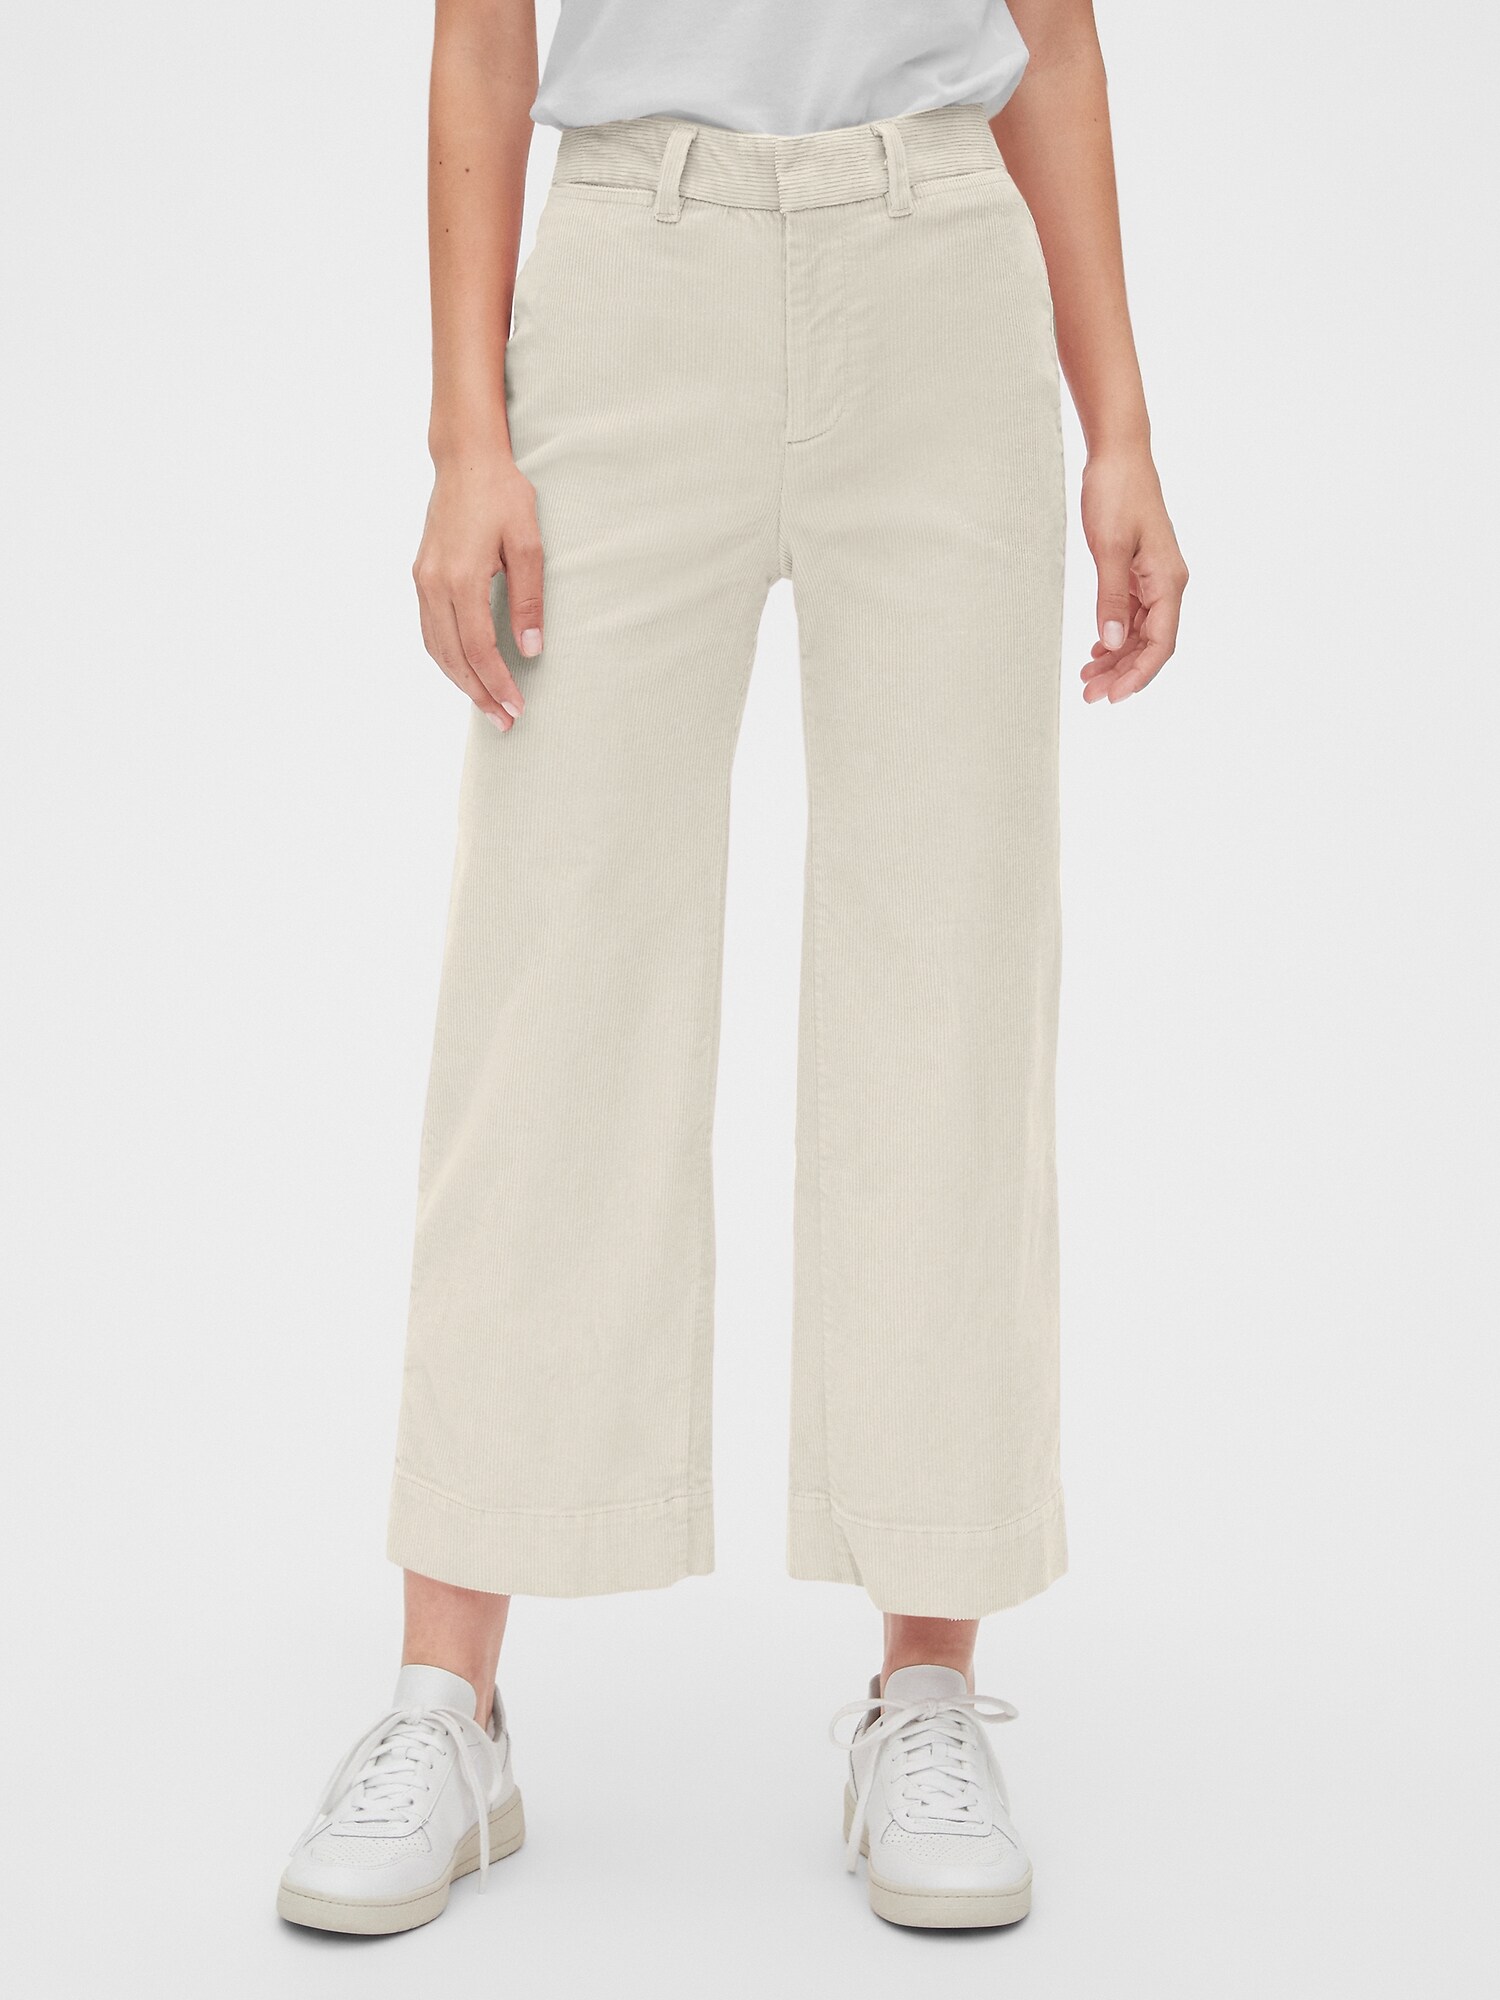 Gap Mens White Slim Khaki Pants Size 33x32 - beyond exchange